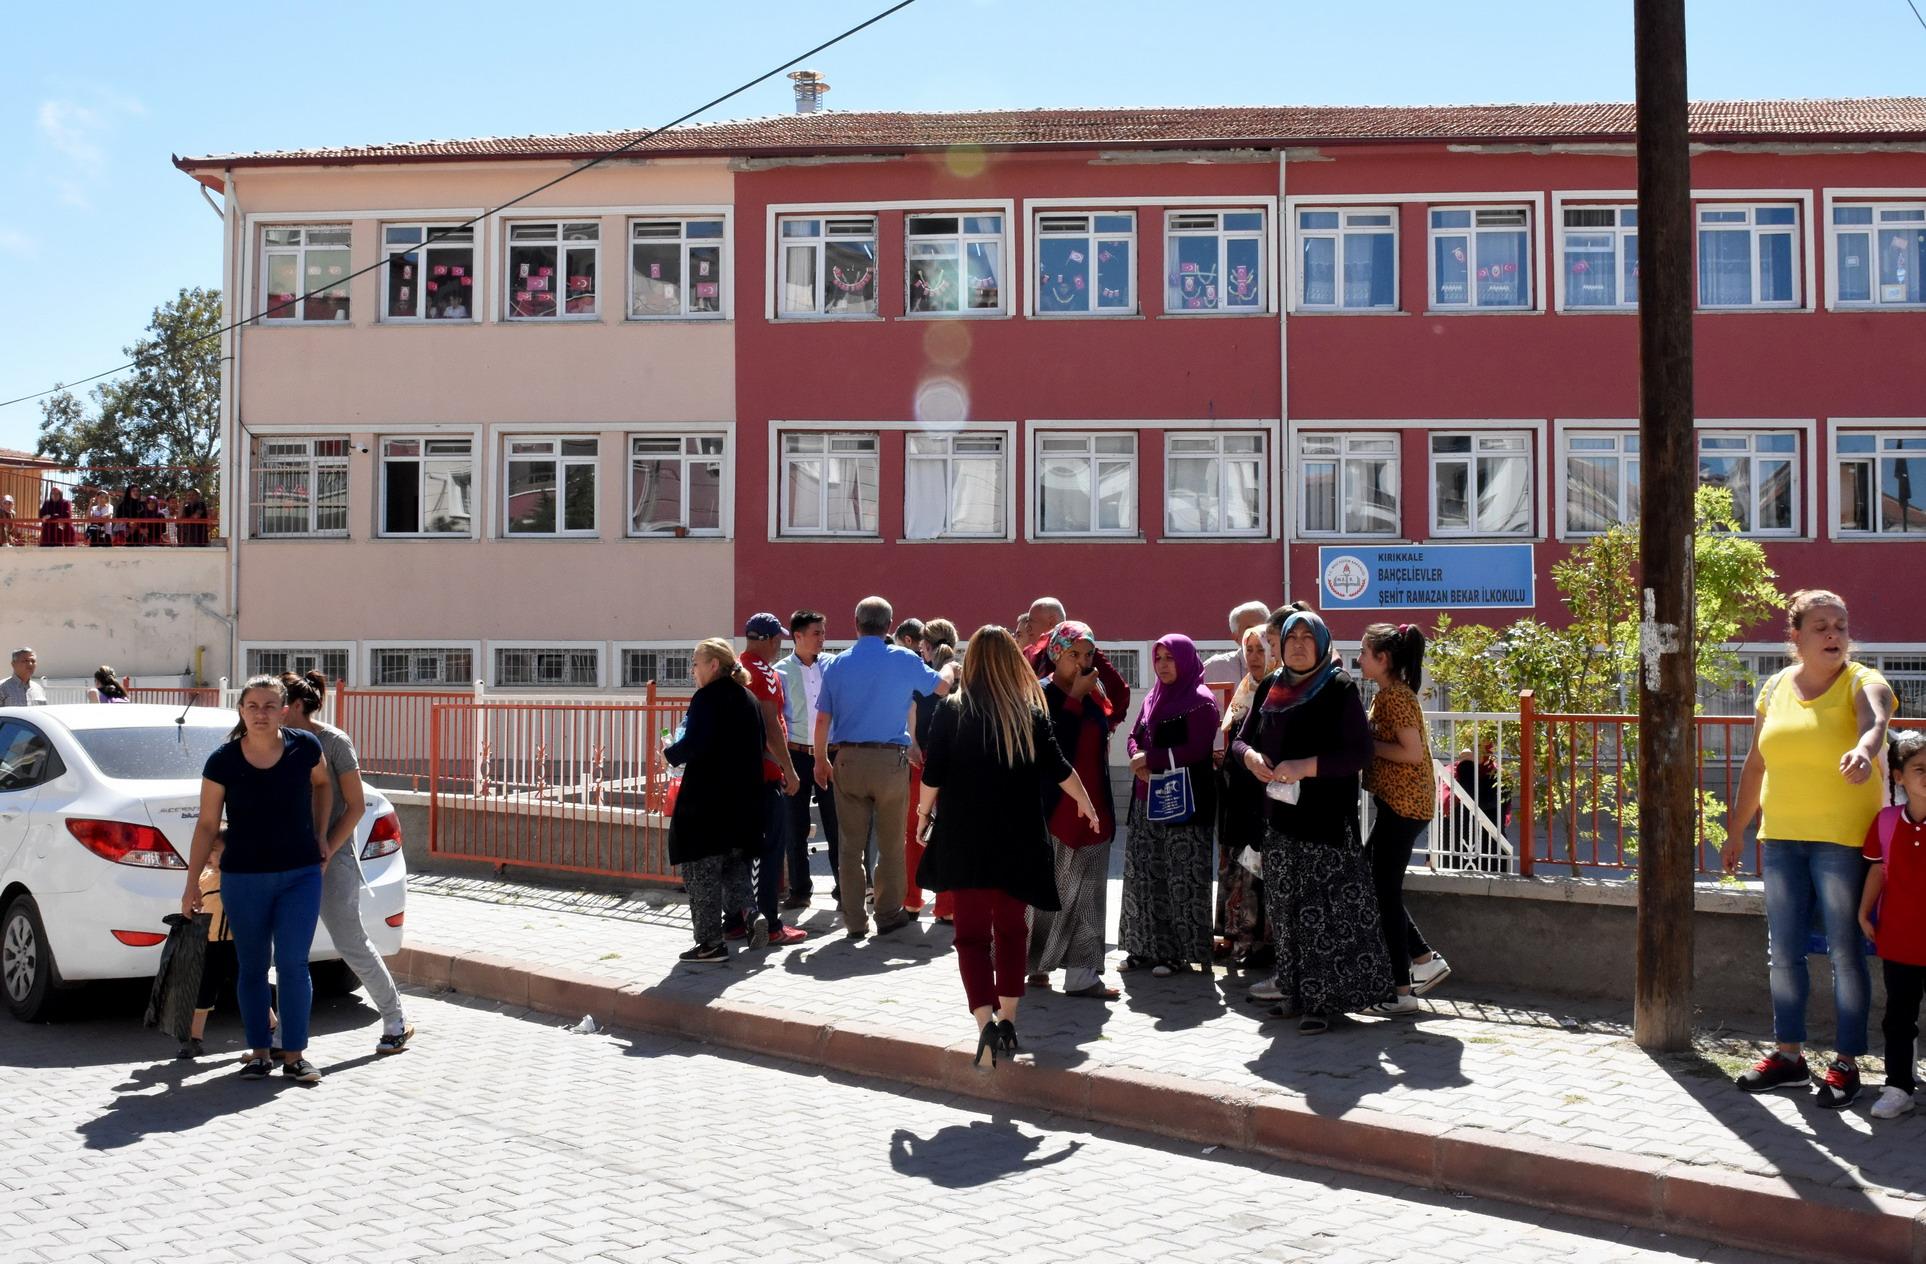  Velilerin öğretmeni darbettiği iddiası - Kırıkkale Haber, Son Dakika Kırıkkale Haberleri